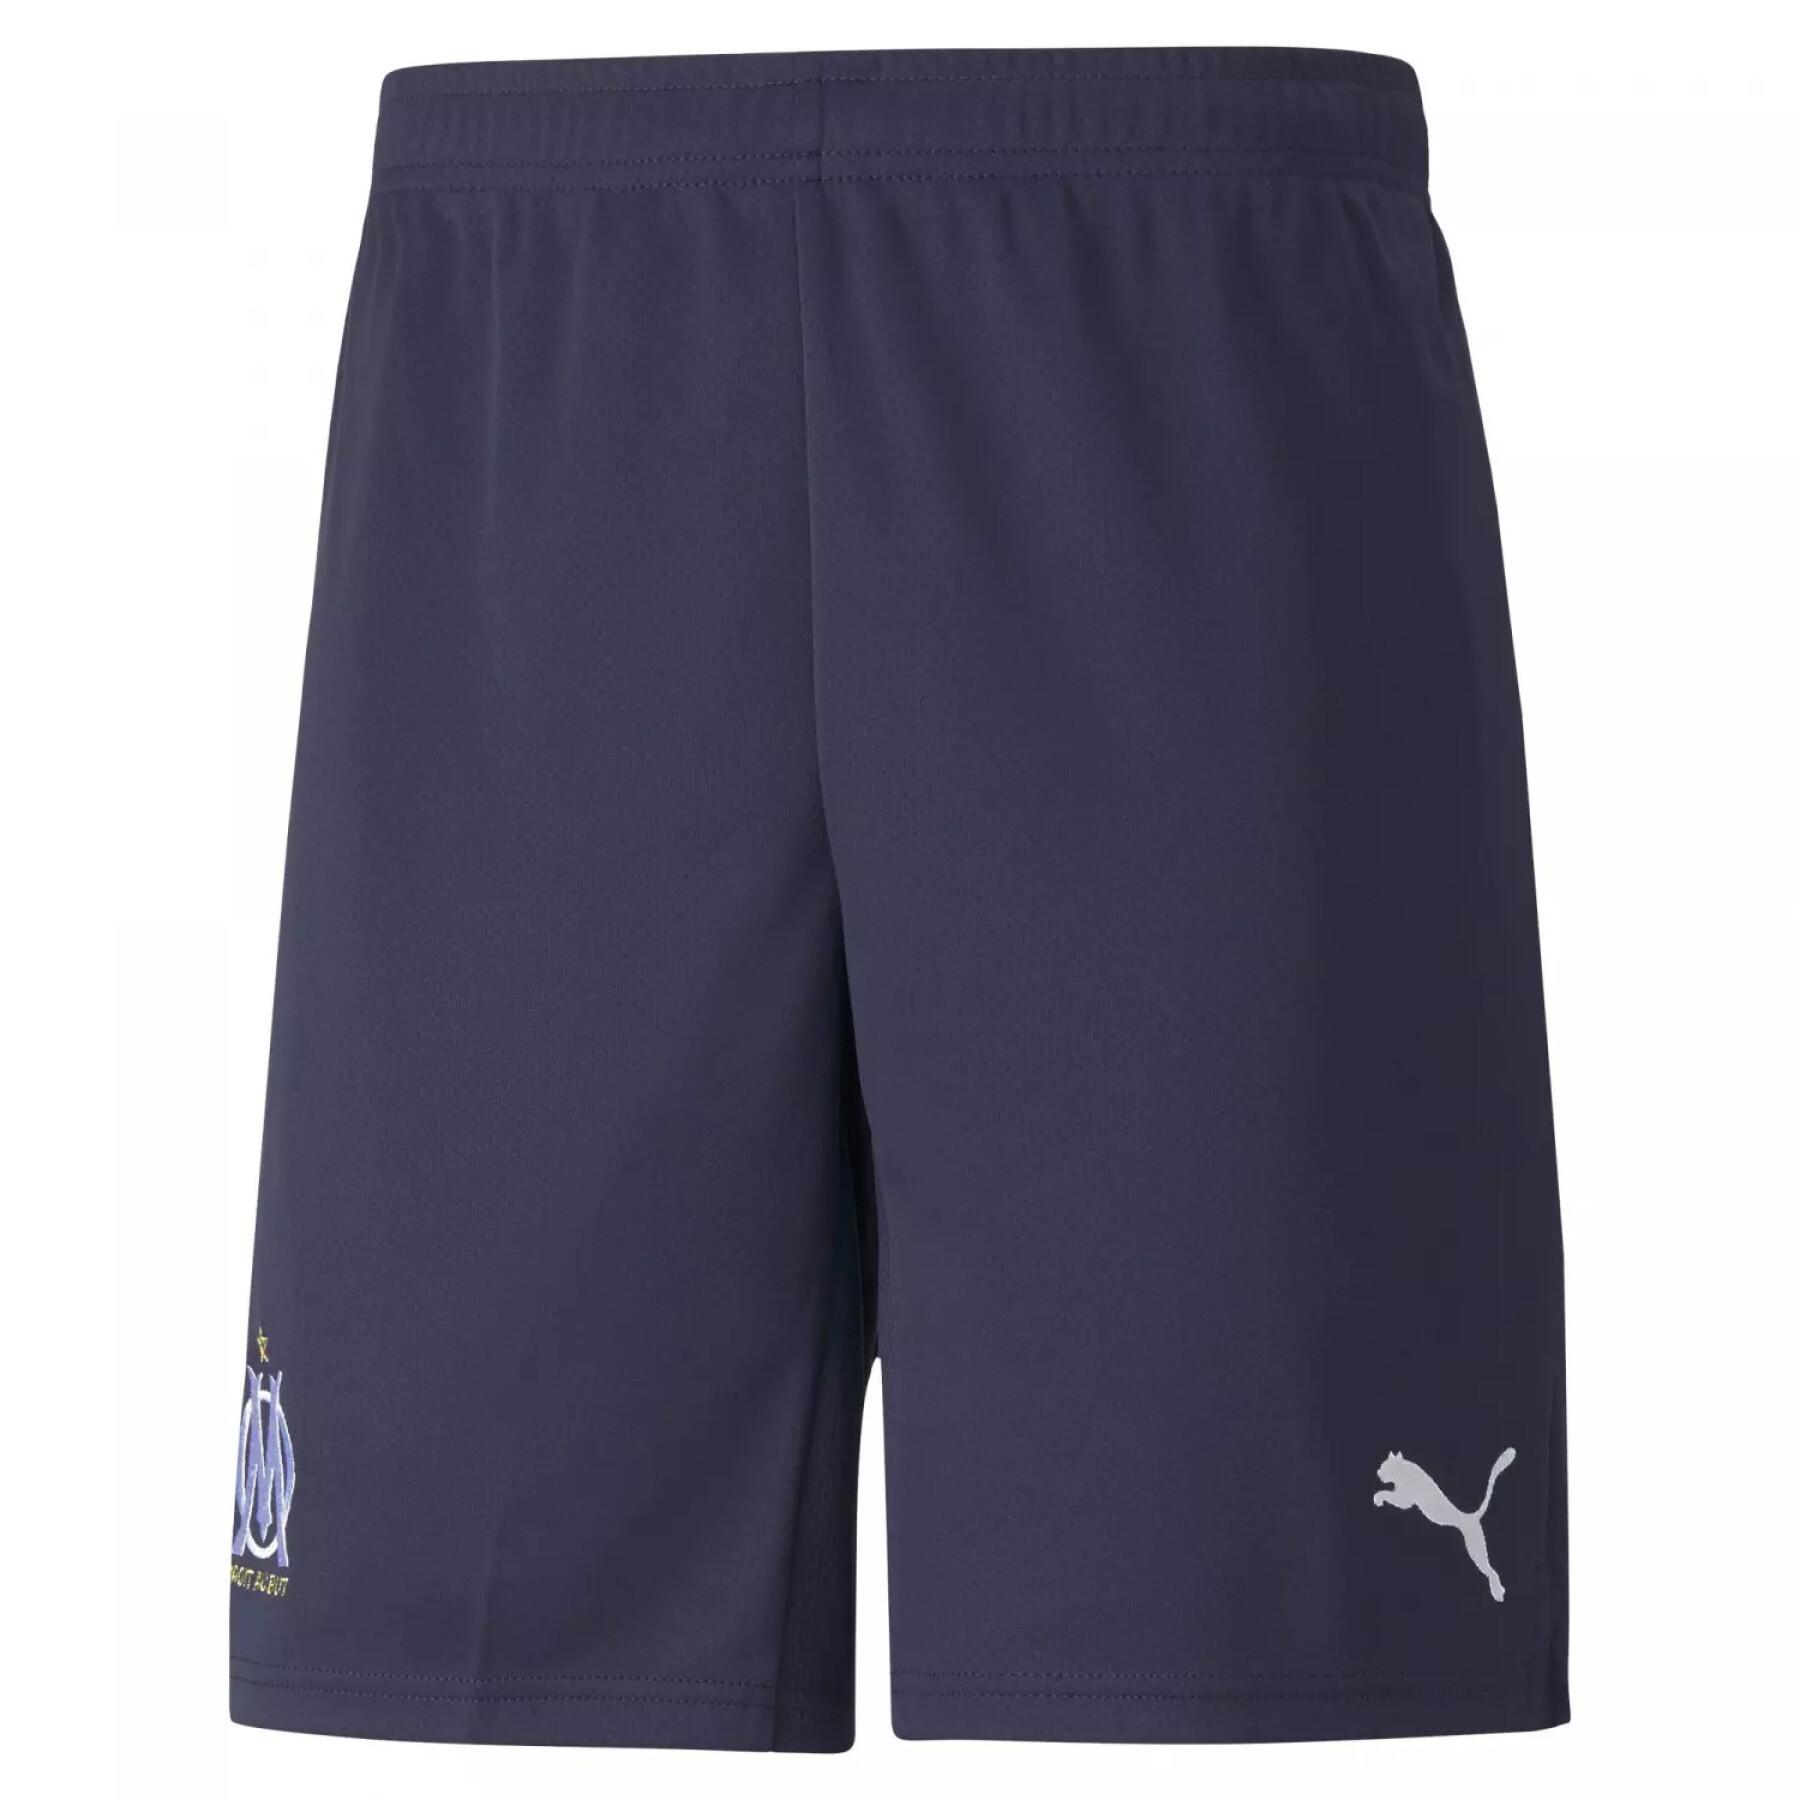 away shorts OM 2021/22